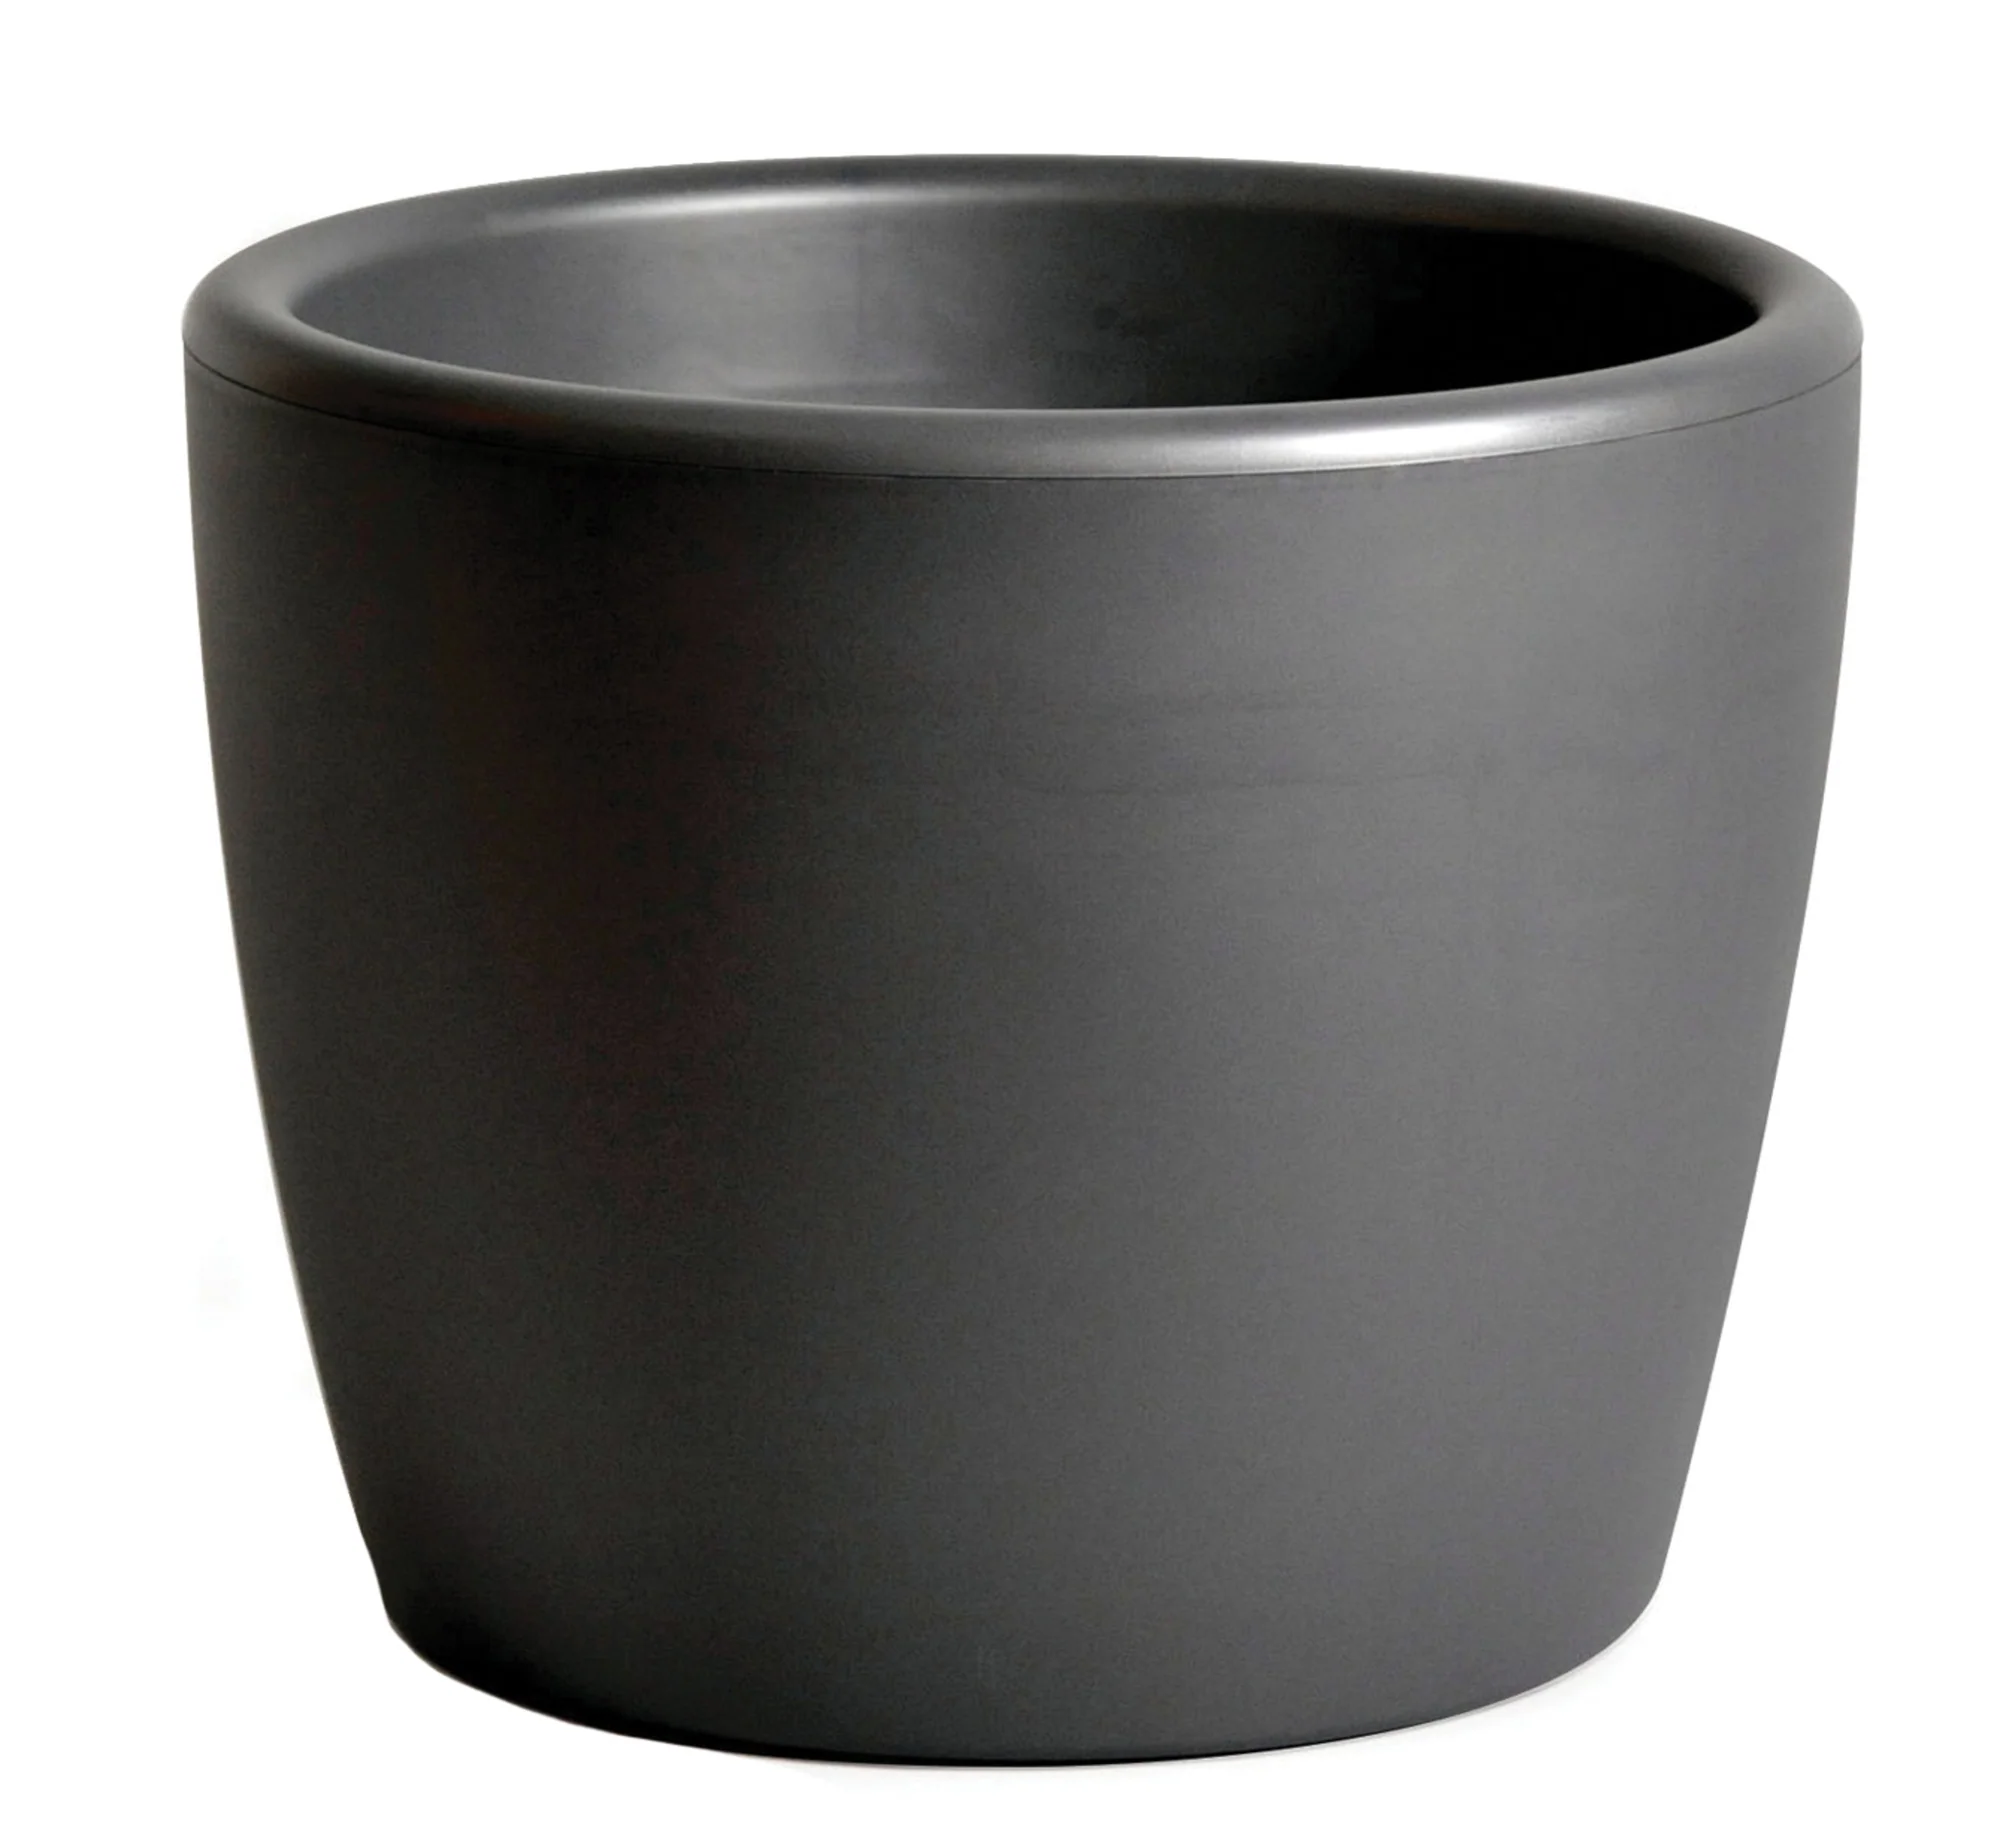 Buiten bloempot Essence 45xh31 cm Bowl Pot Antraciet kunststof